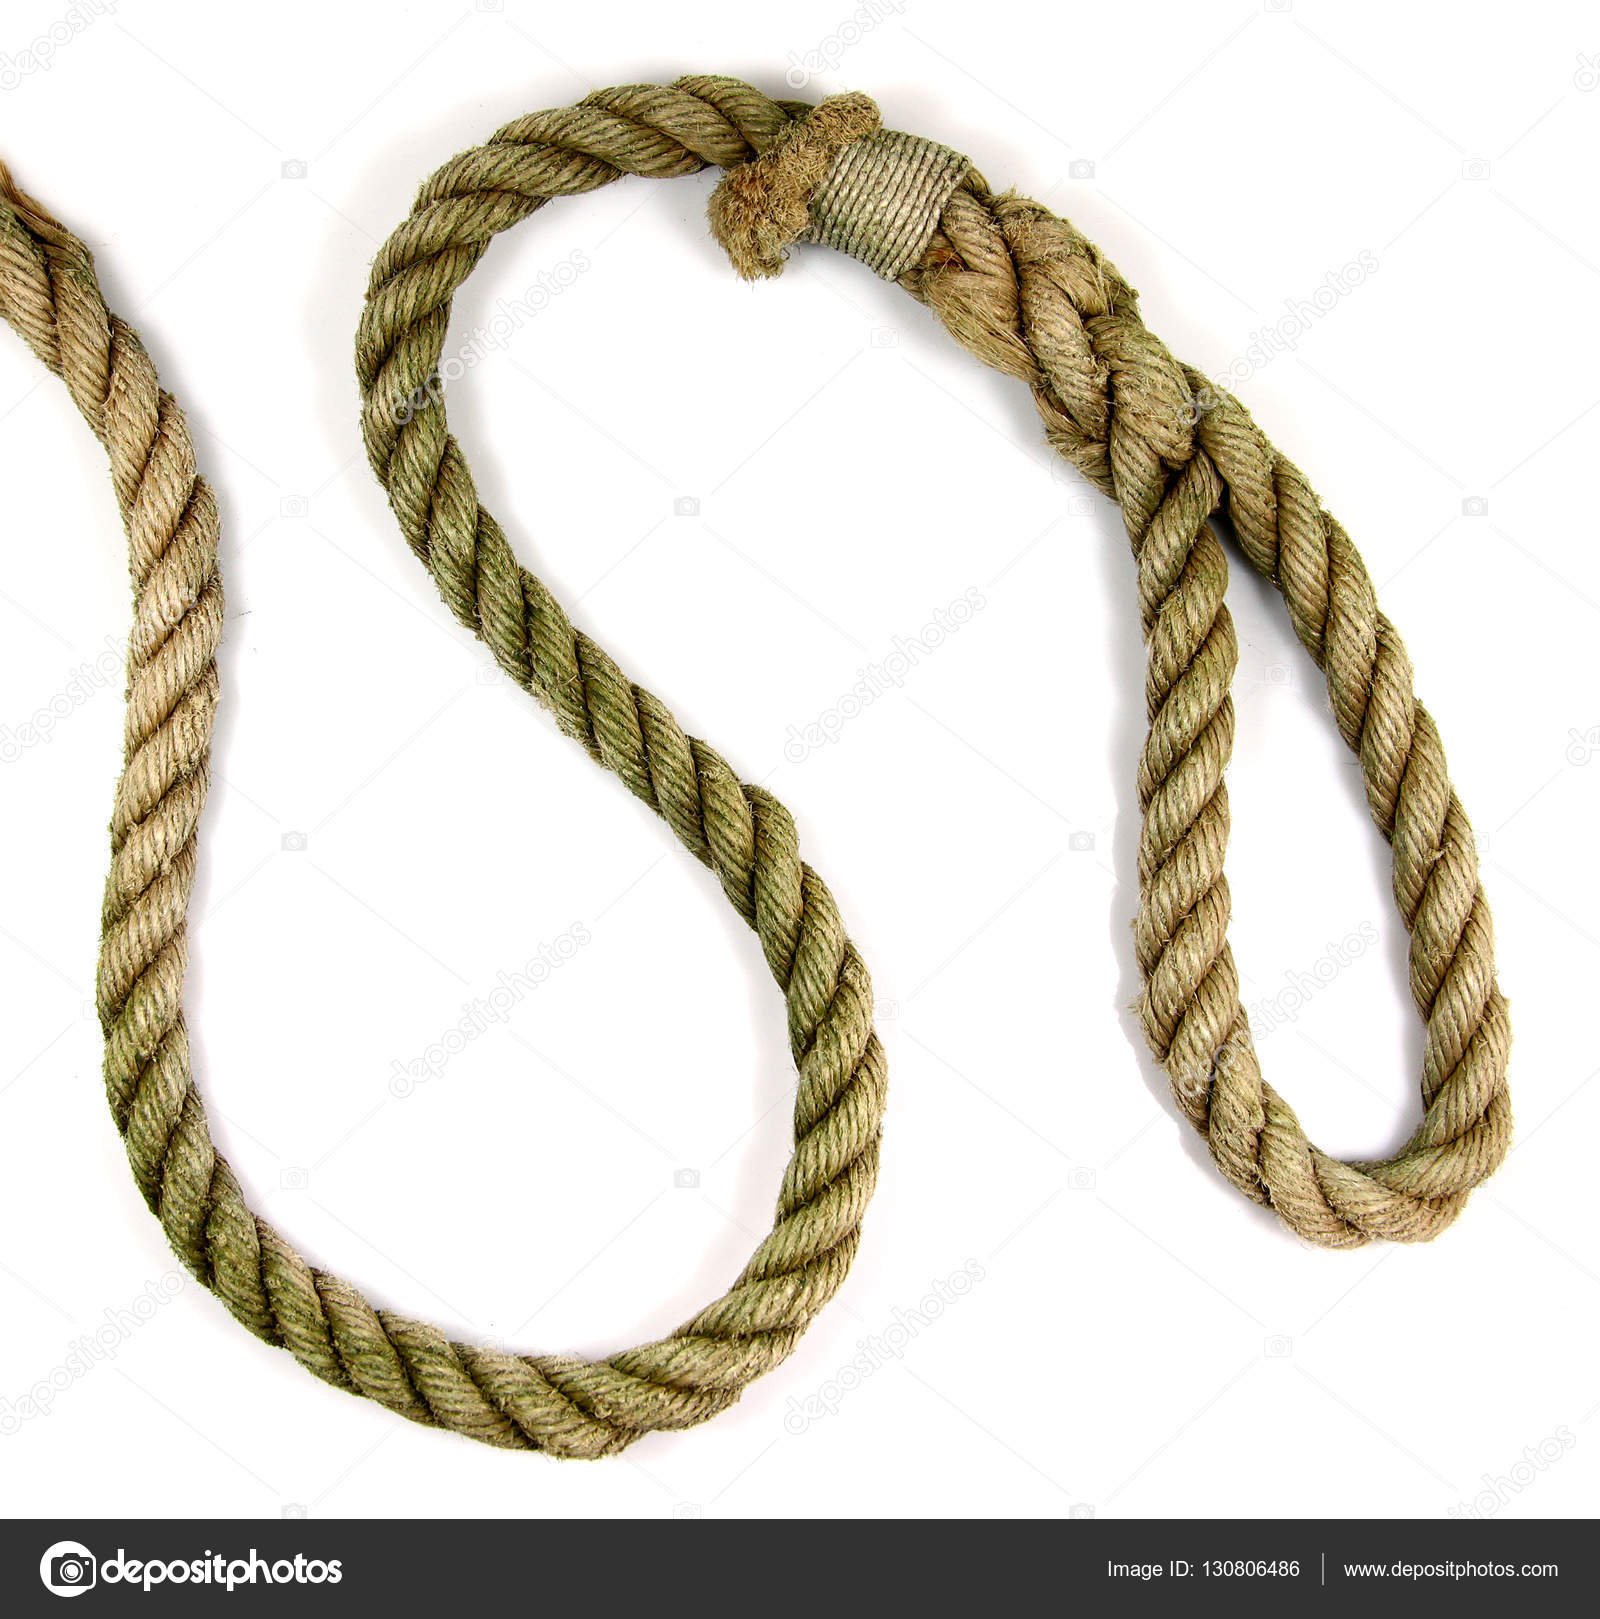 Old heavy rope — Stock Photo © bobby22 #130806486